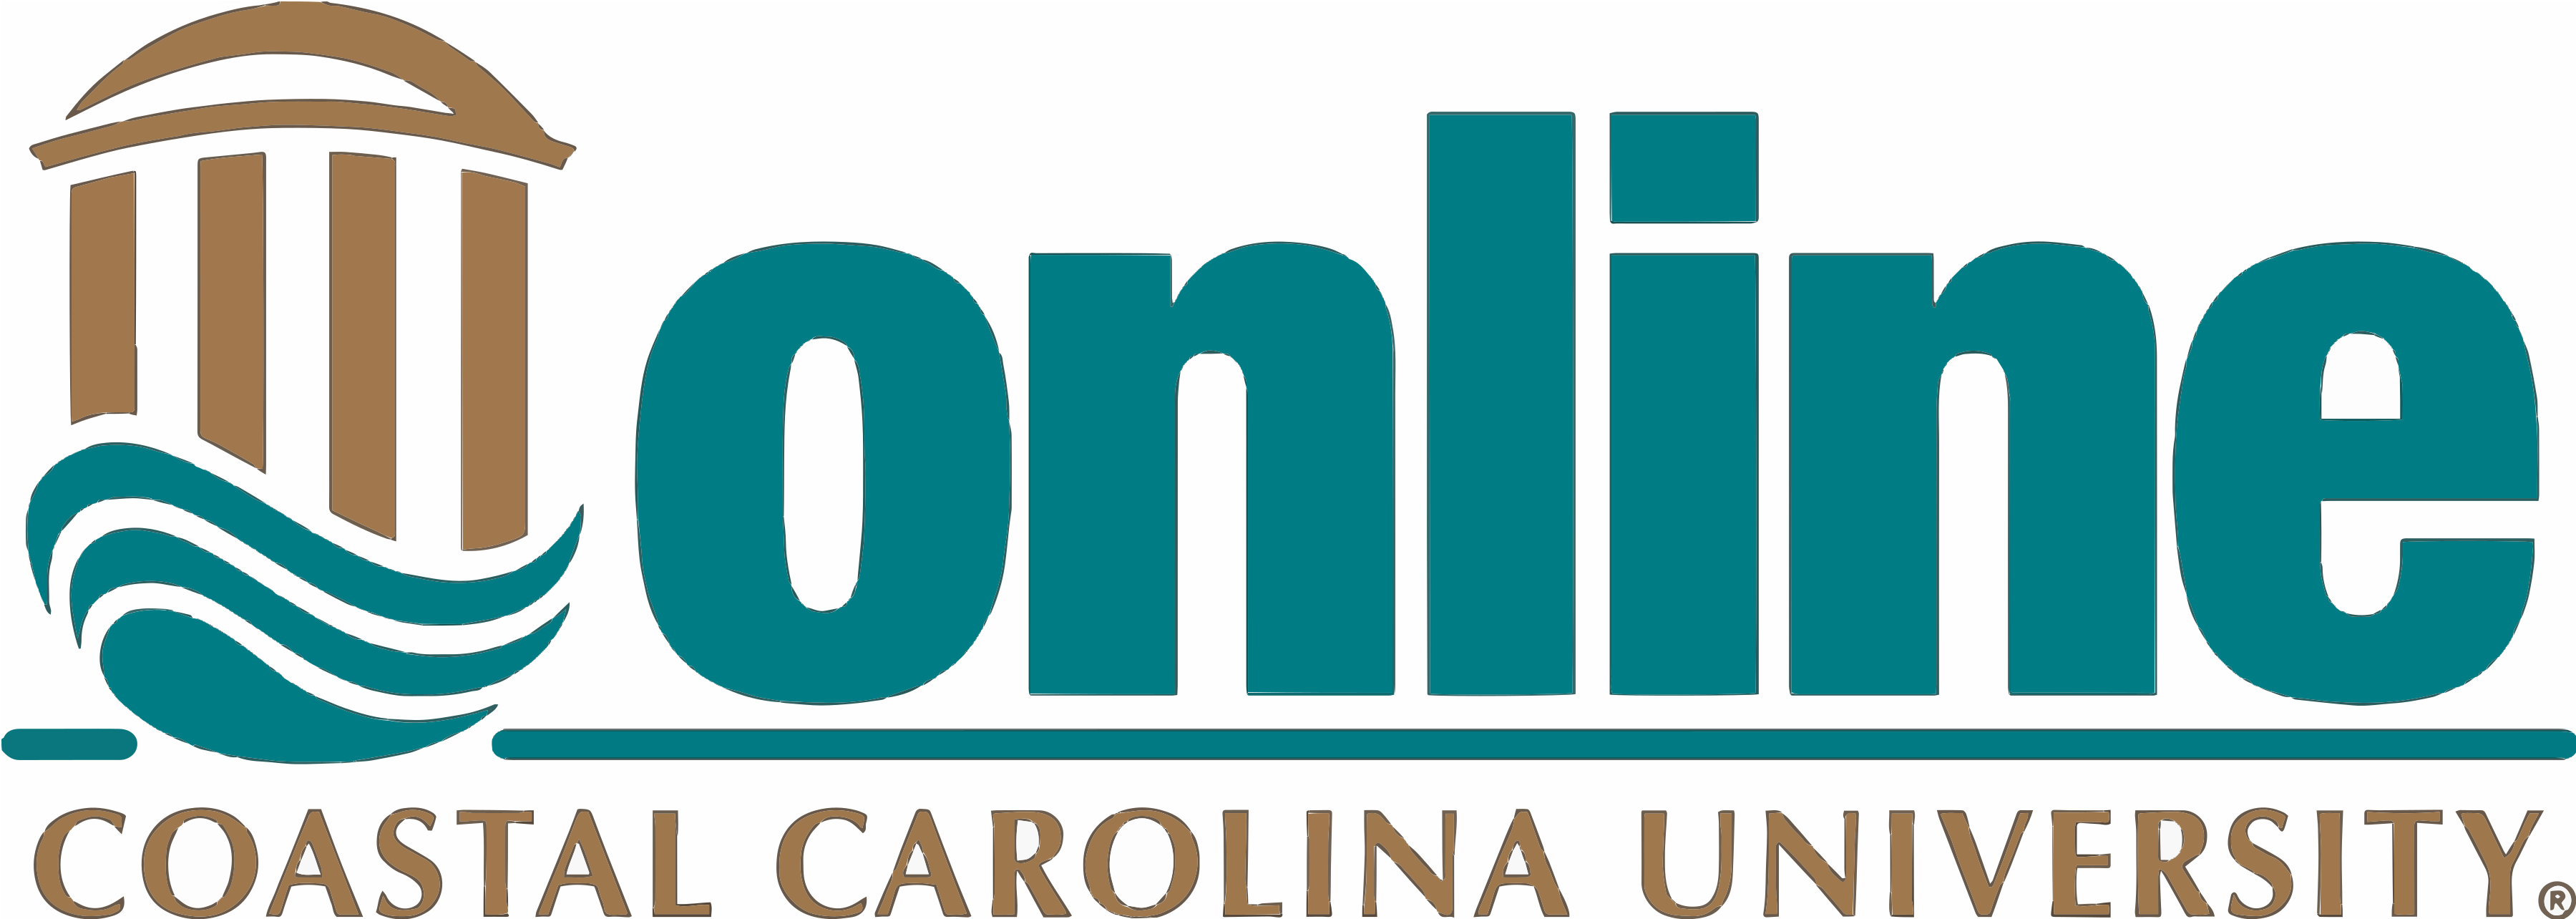 Coastal Carolina University Online